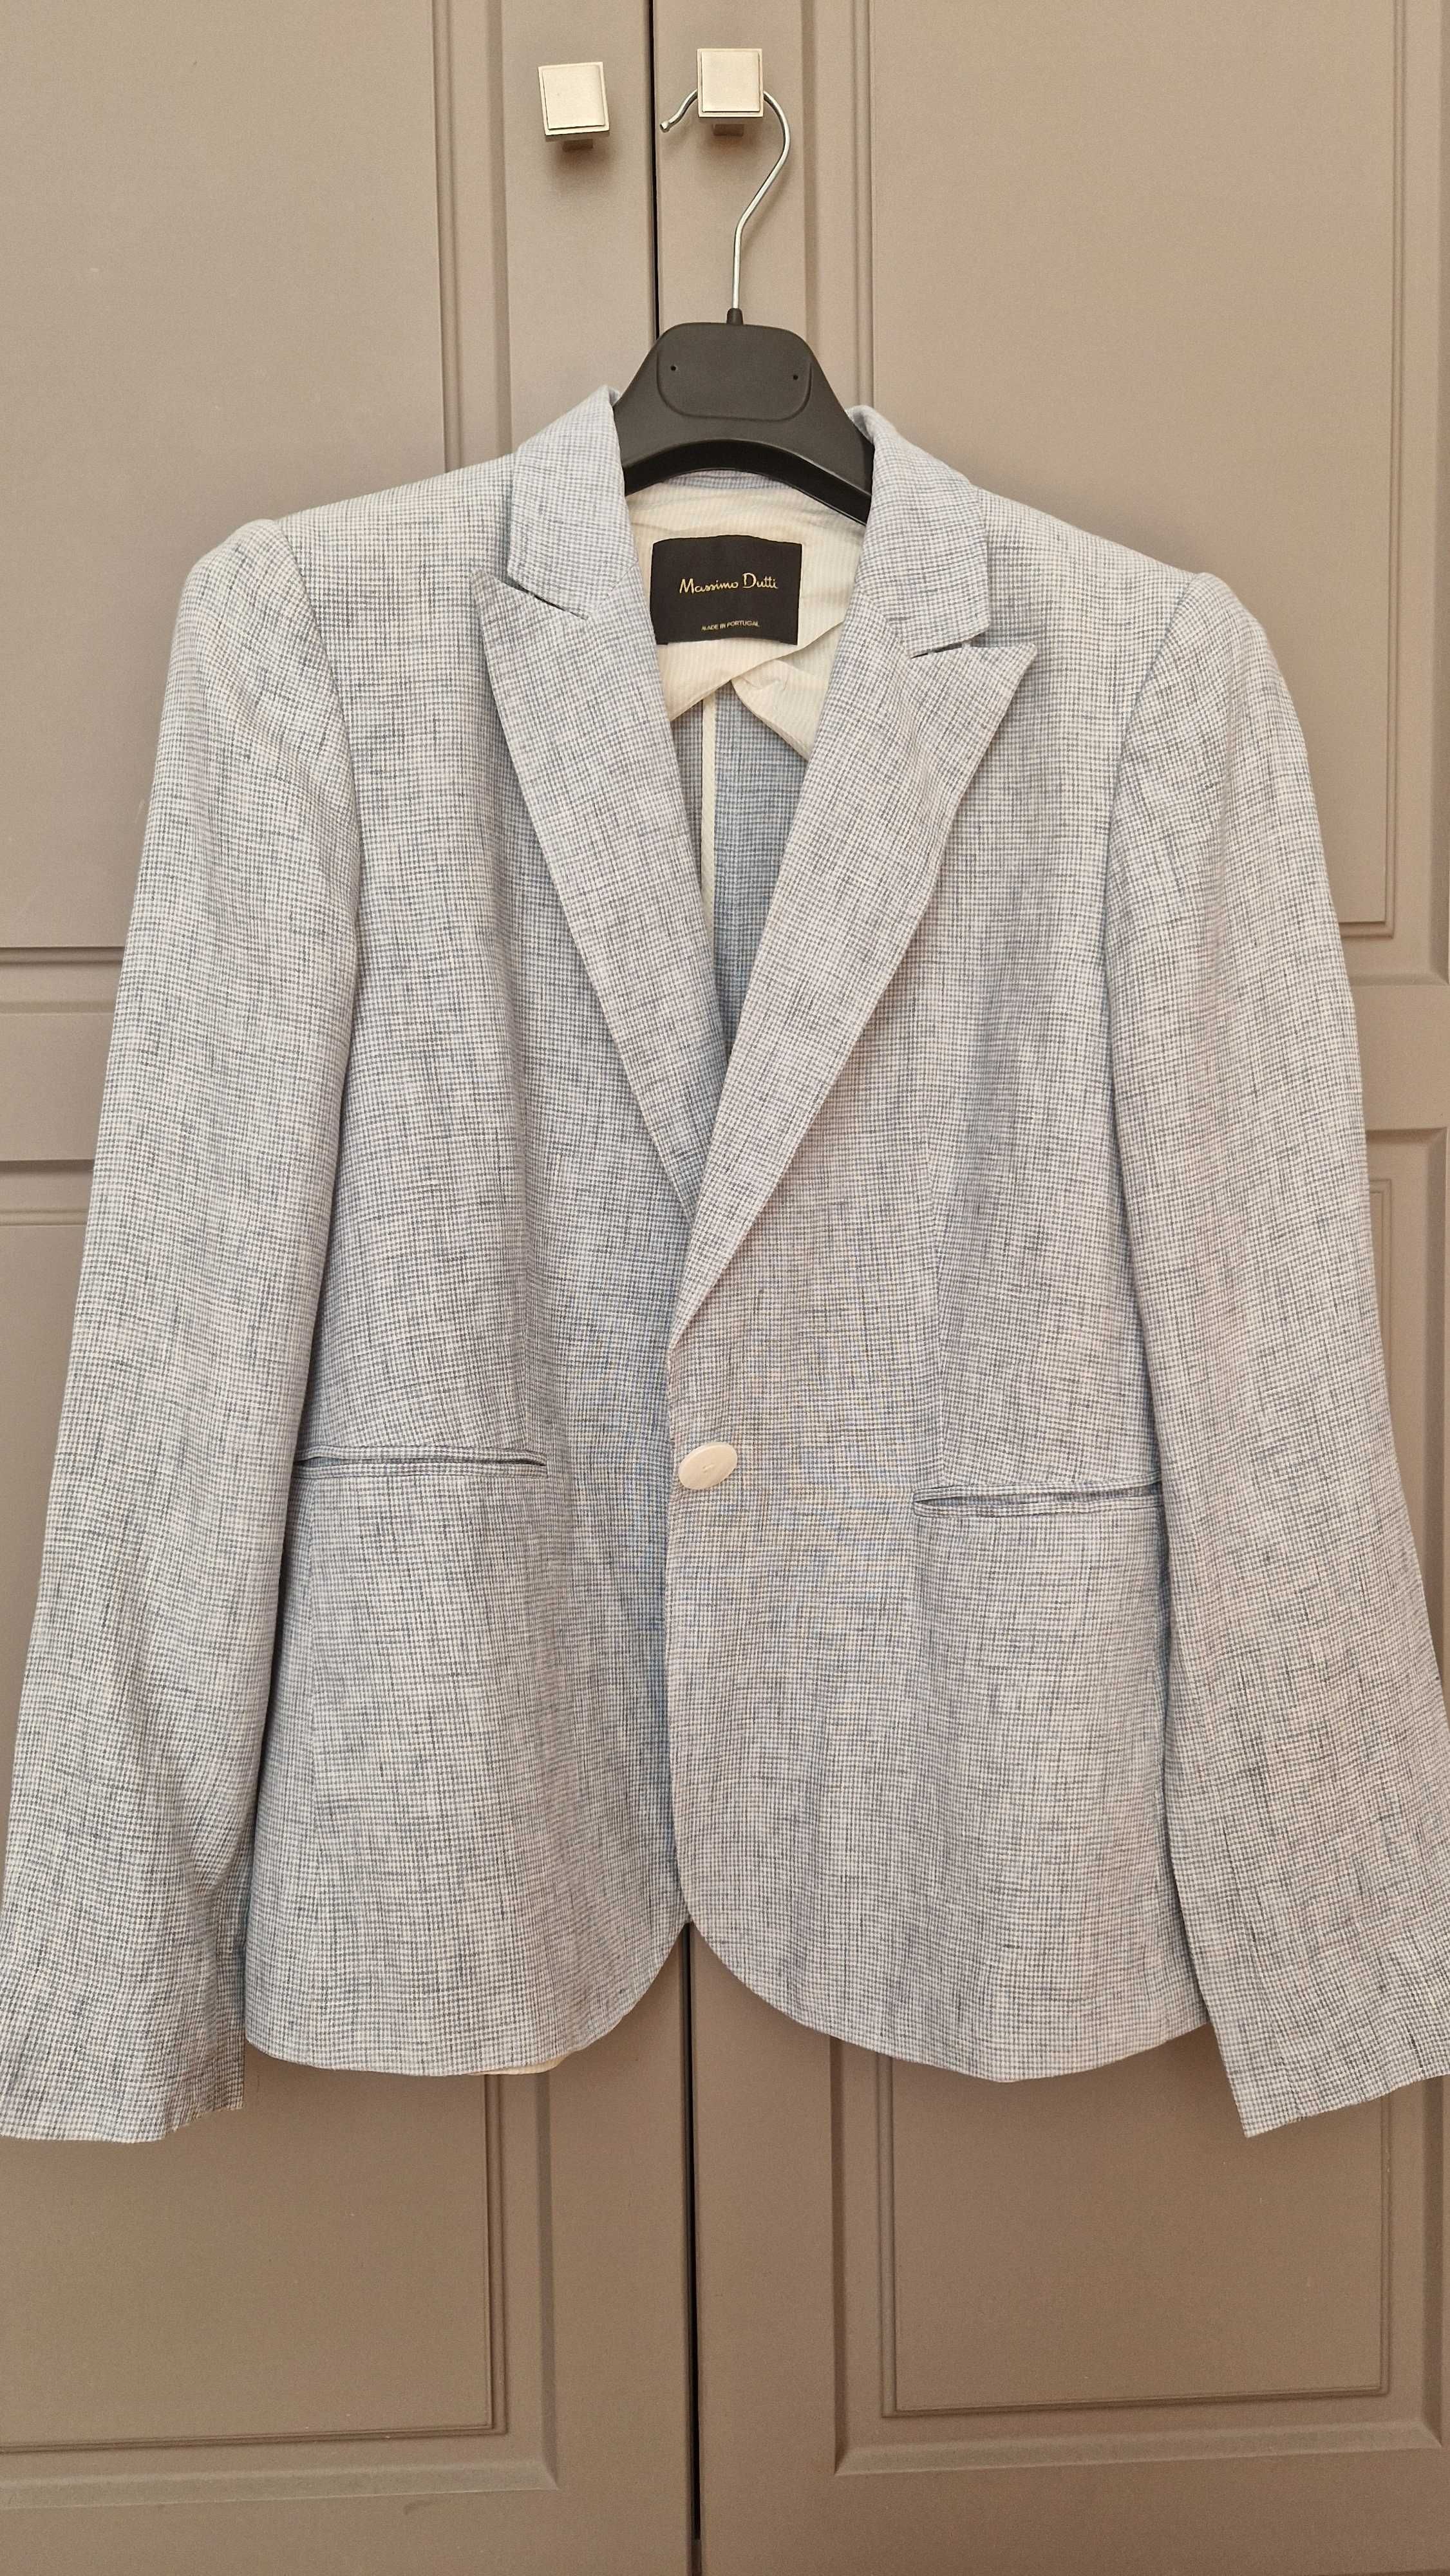 Пиджаки Massimo Dutti and Zara, куртка S'Oliver.